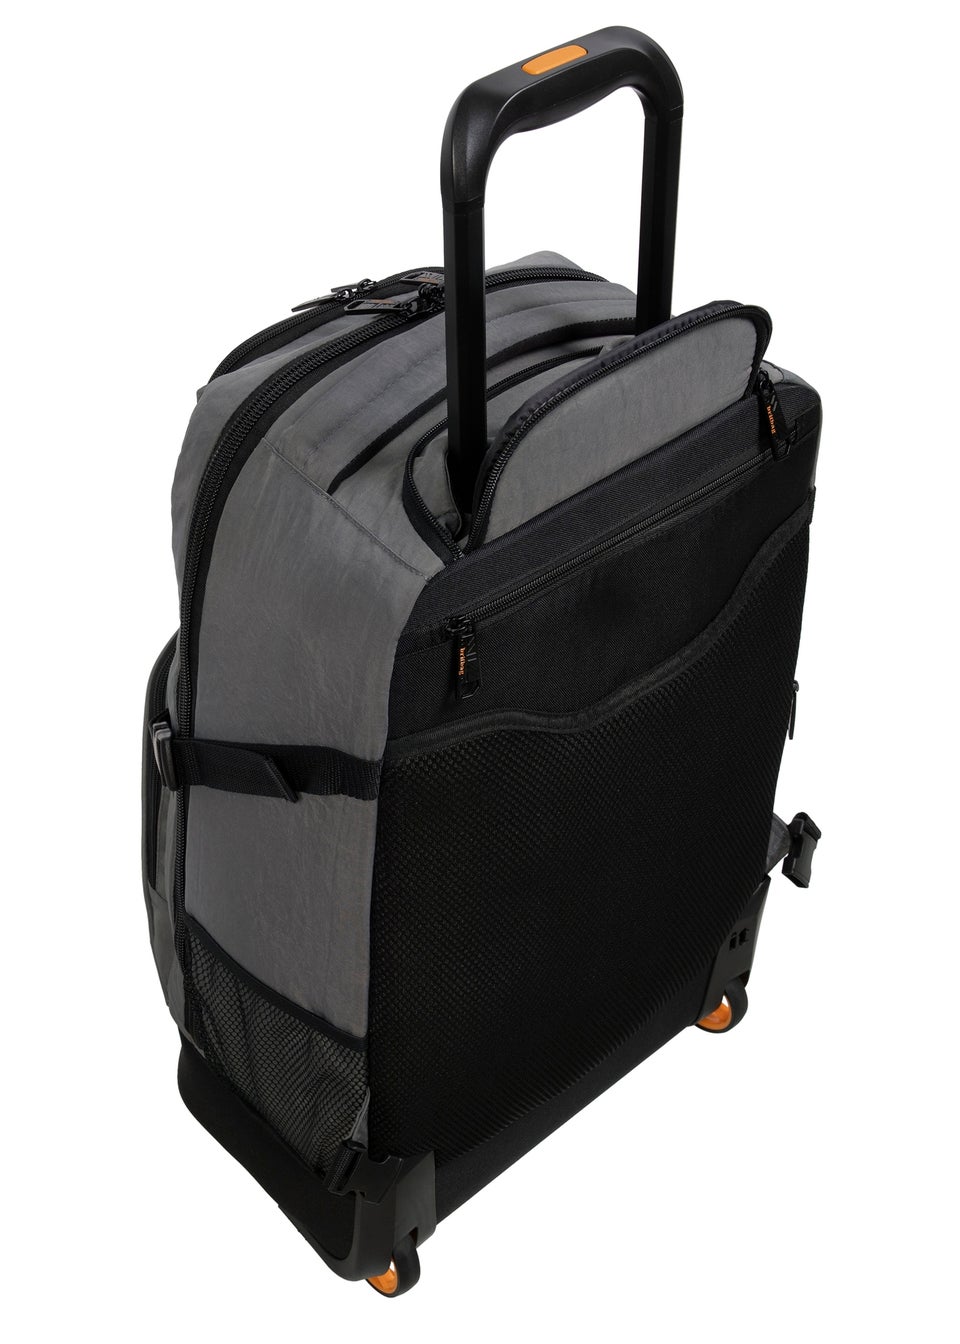 BritBag Nauru Charcoal Large Trolley Backpack